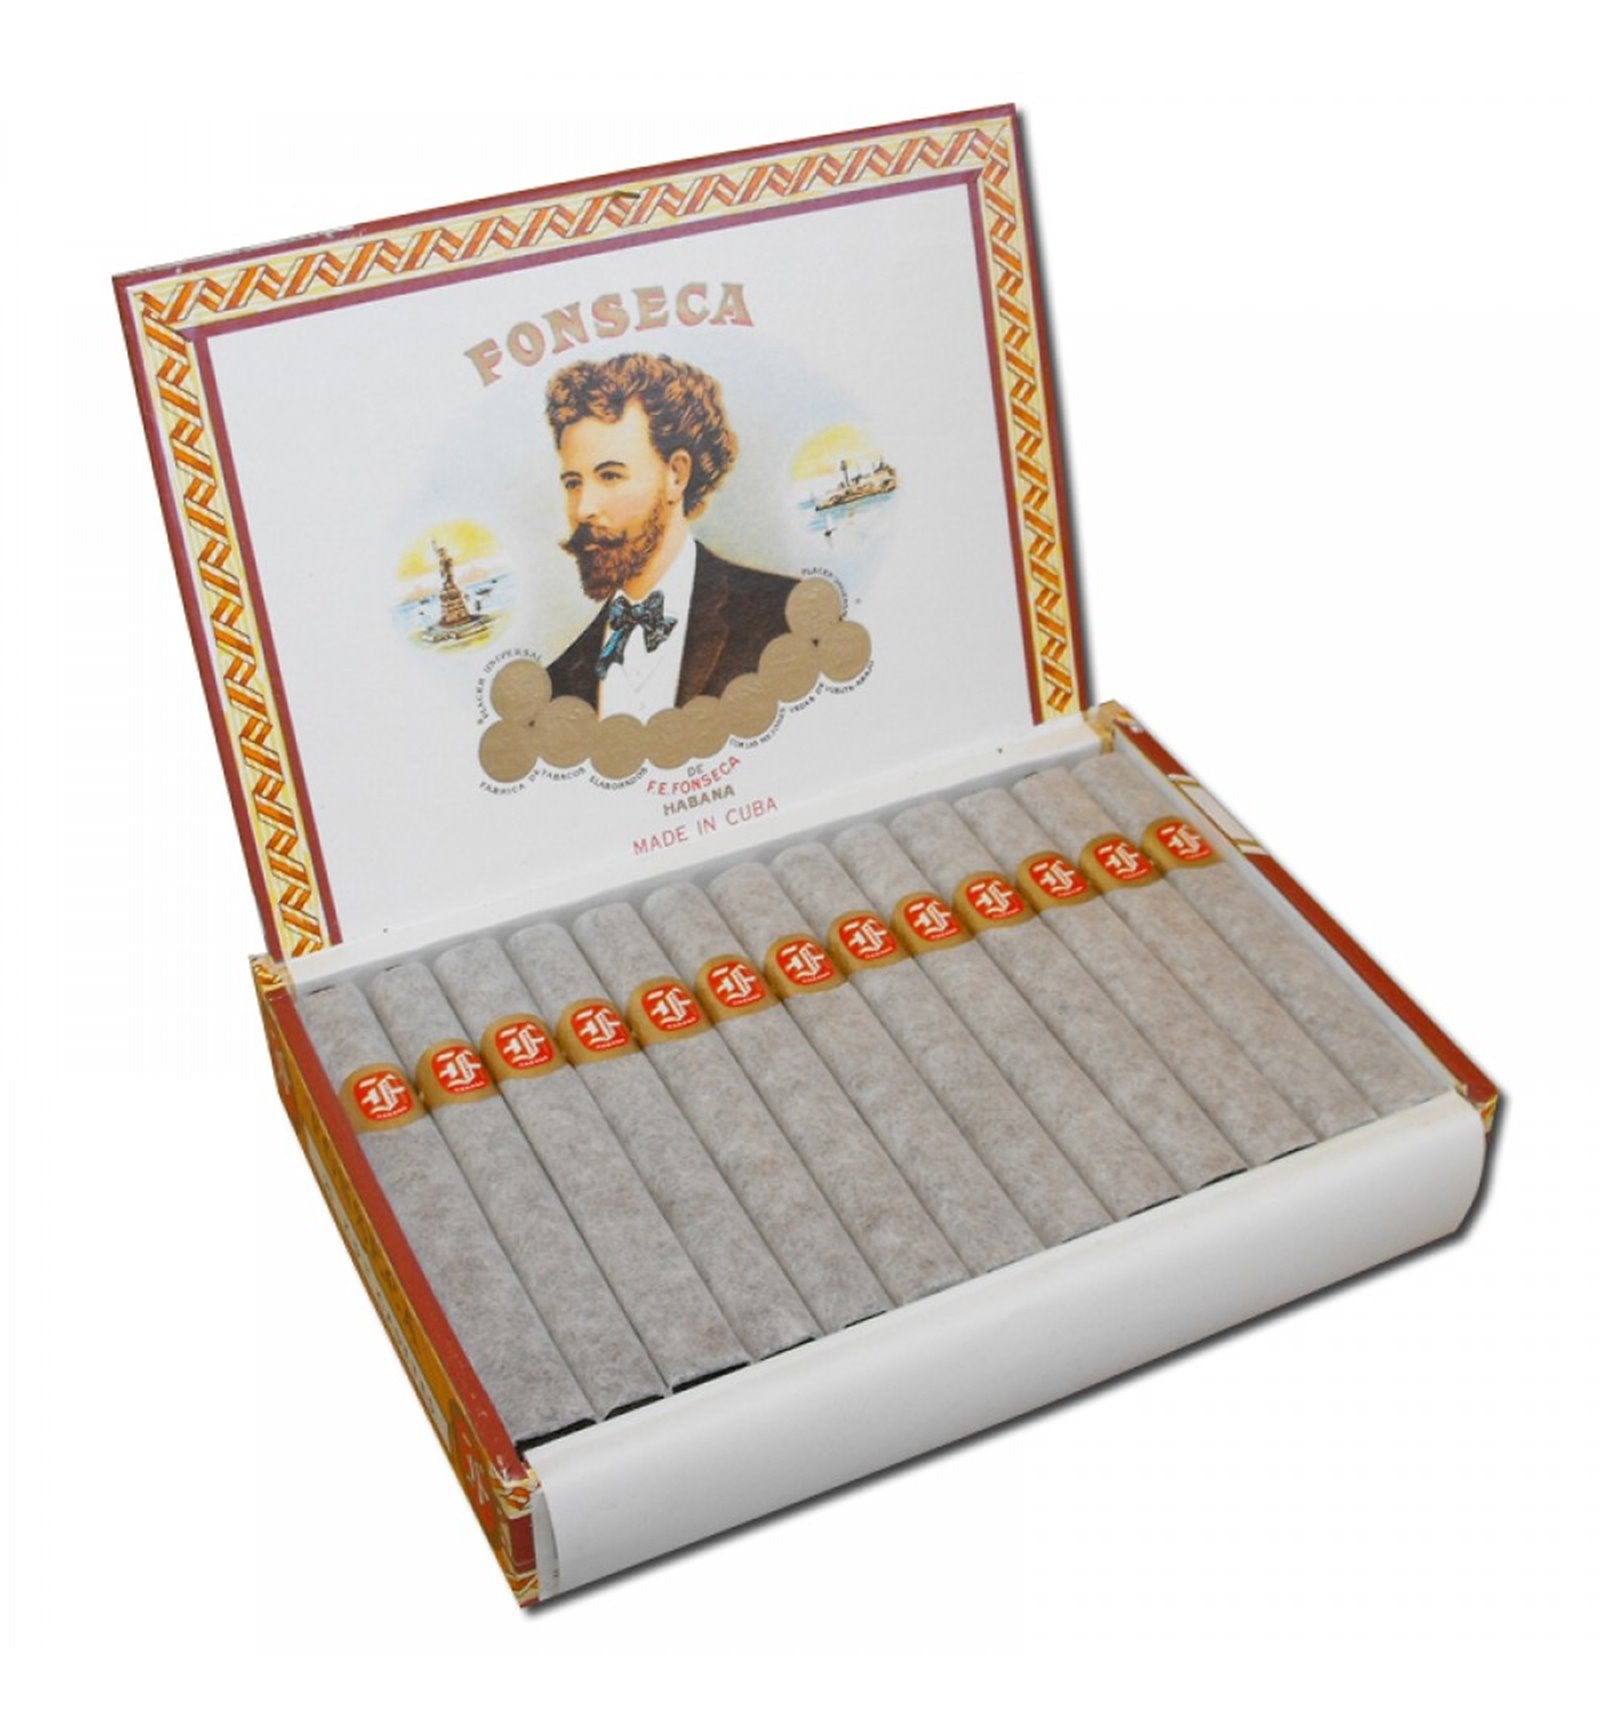 Fonseca Delicias Zigarren in der 25er Kiste geöffnet